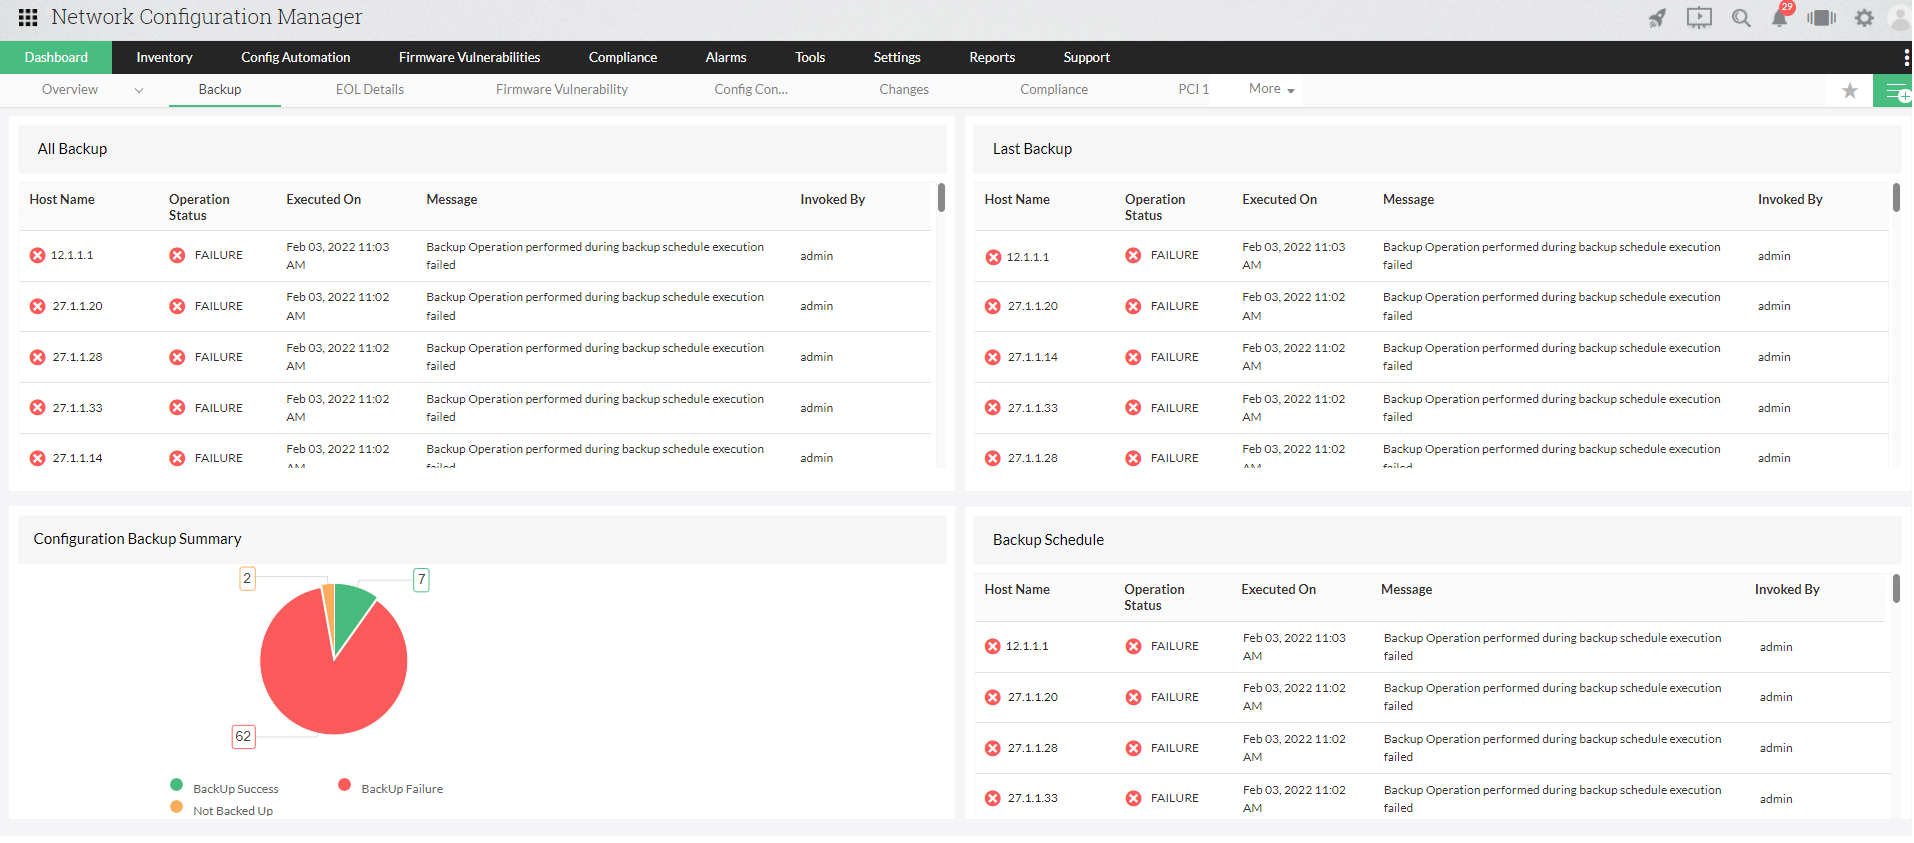 Dashboard de gestión de la configuración de routers Brocade con Network Configuration Manager